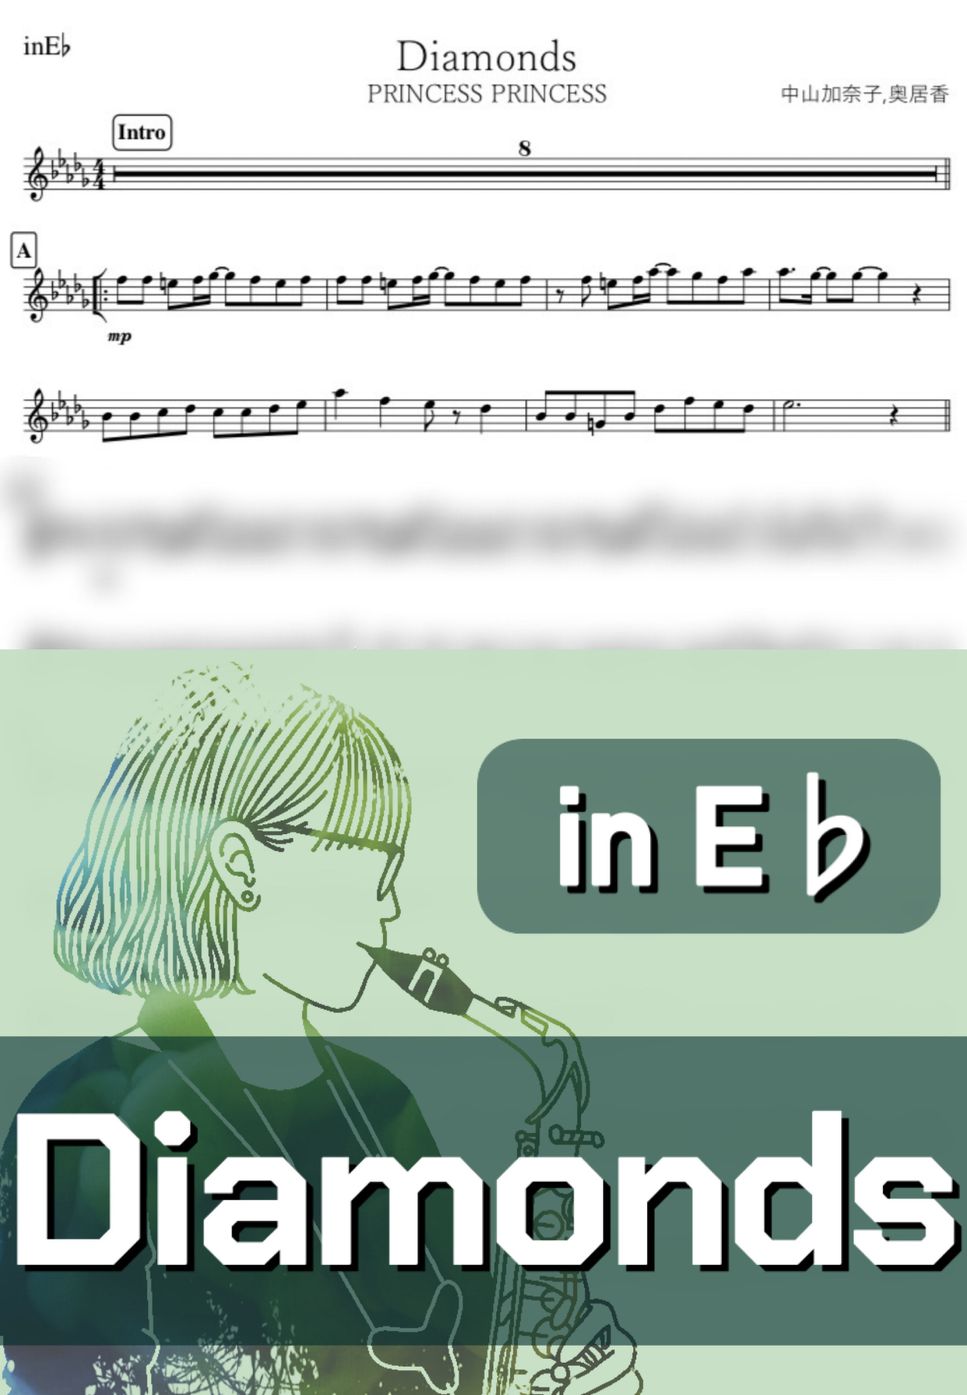 プリンセス プリンセス - Diamonds (E♭) by kanamusic